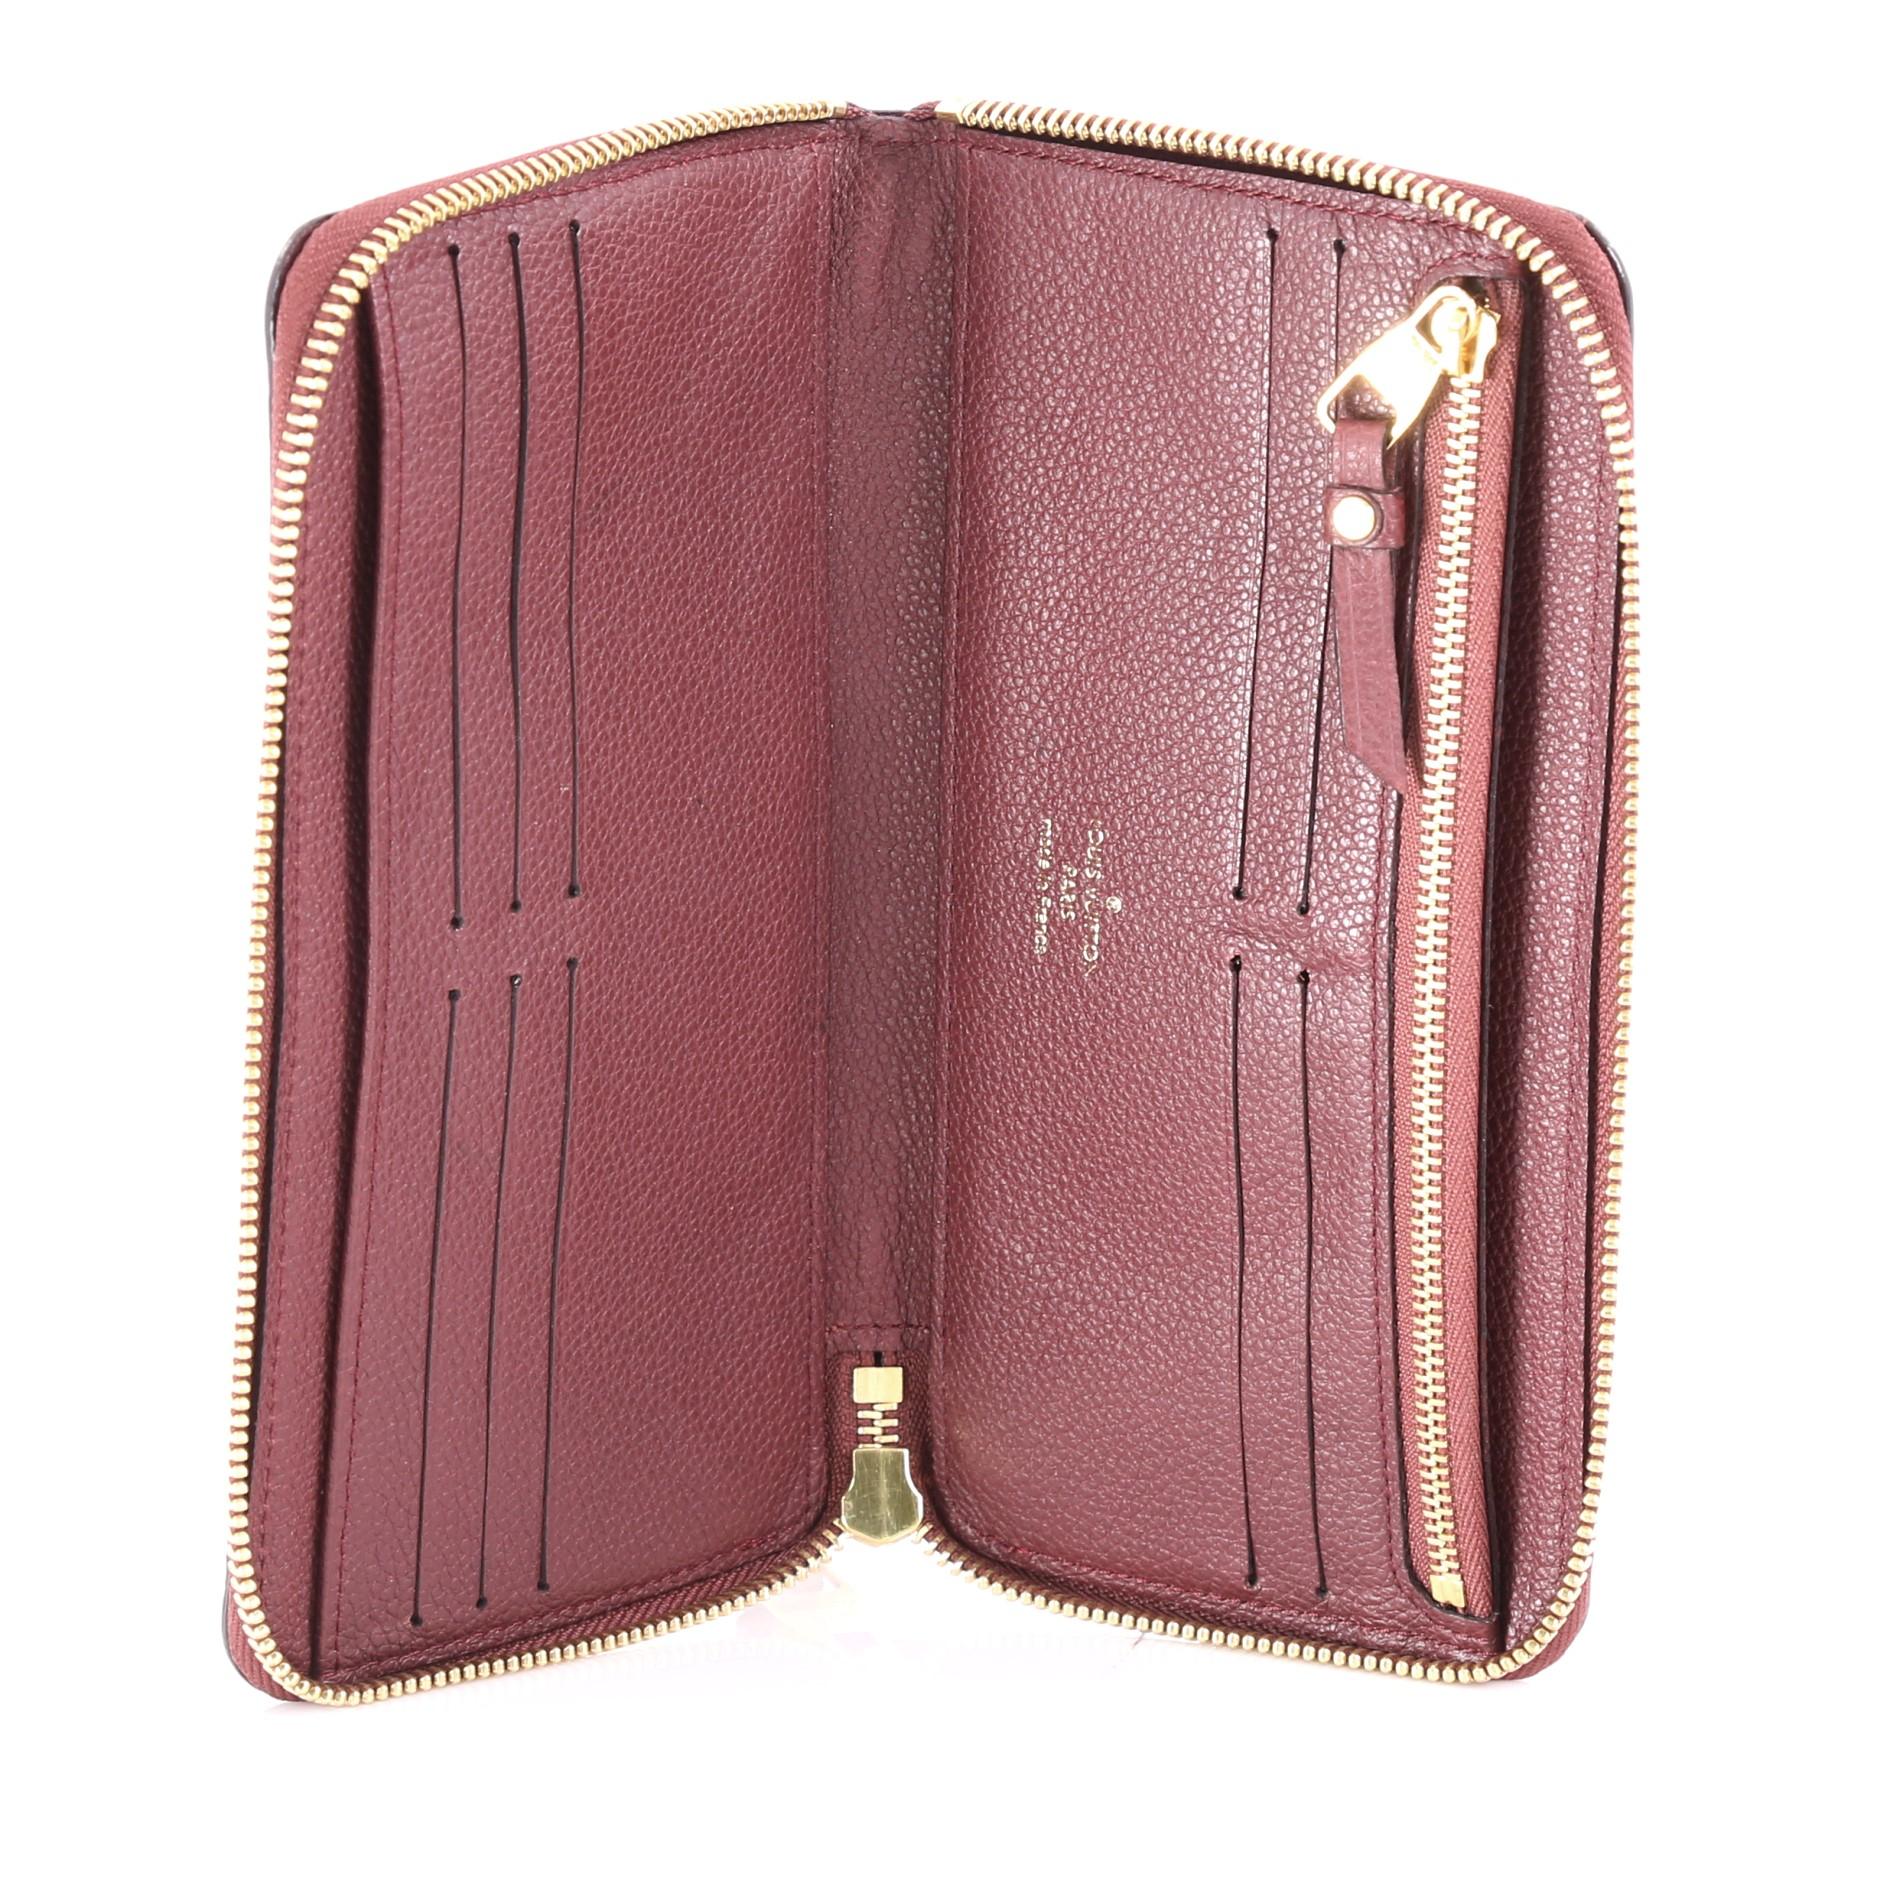  Louis Vuitton Secret Wallet Monogram Empreinte Leather 1